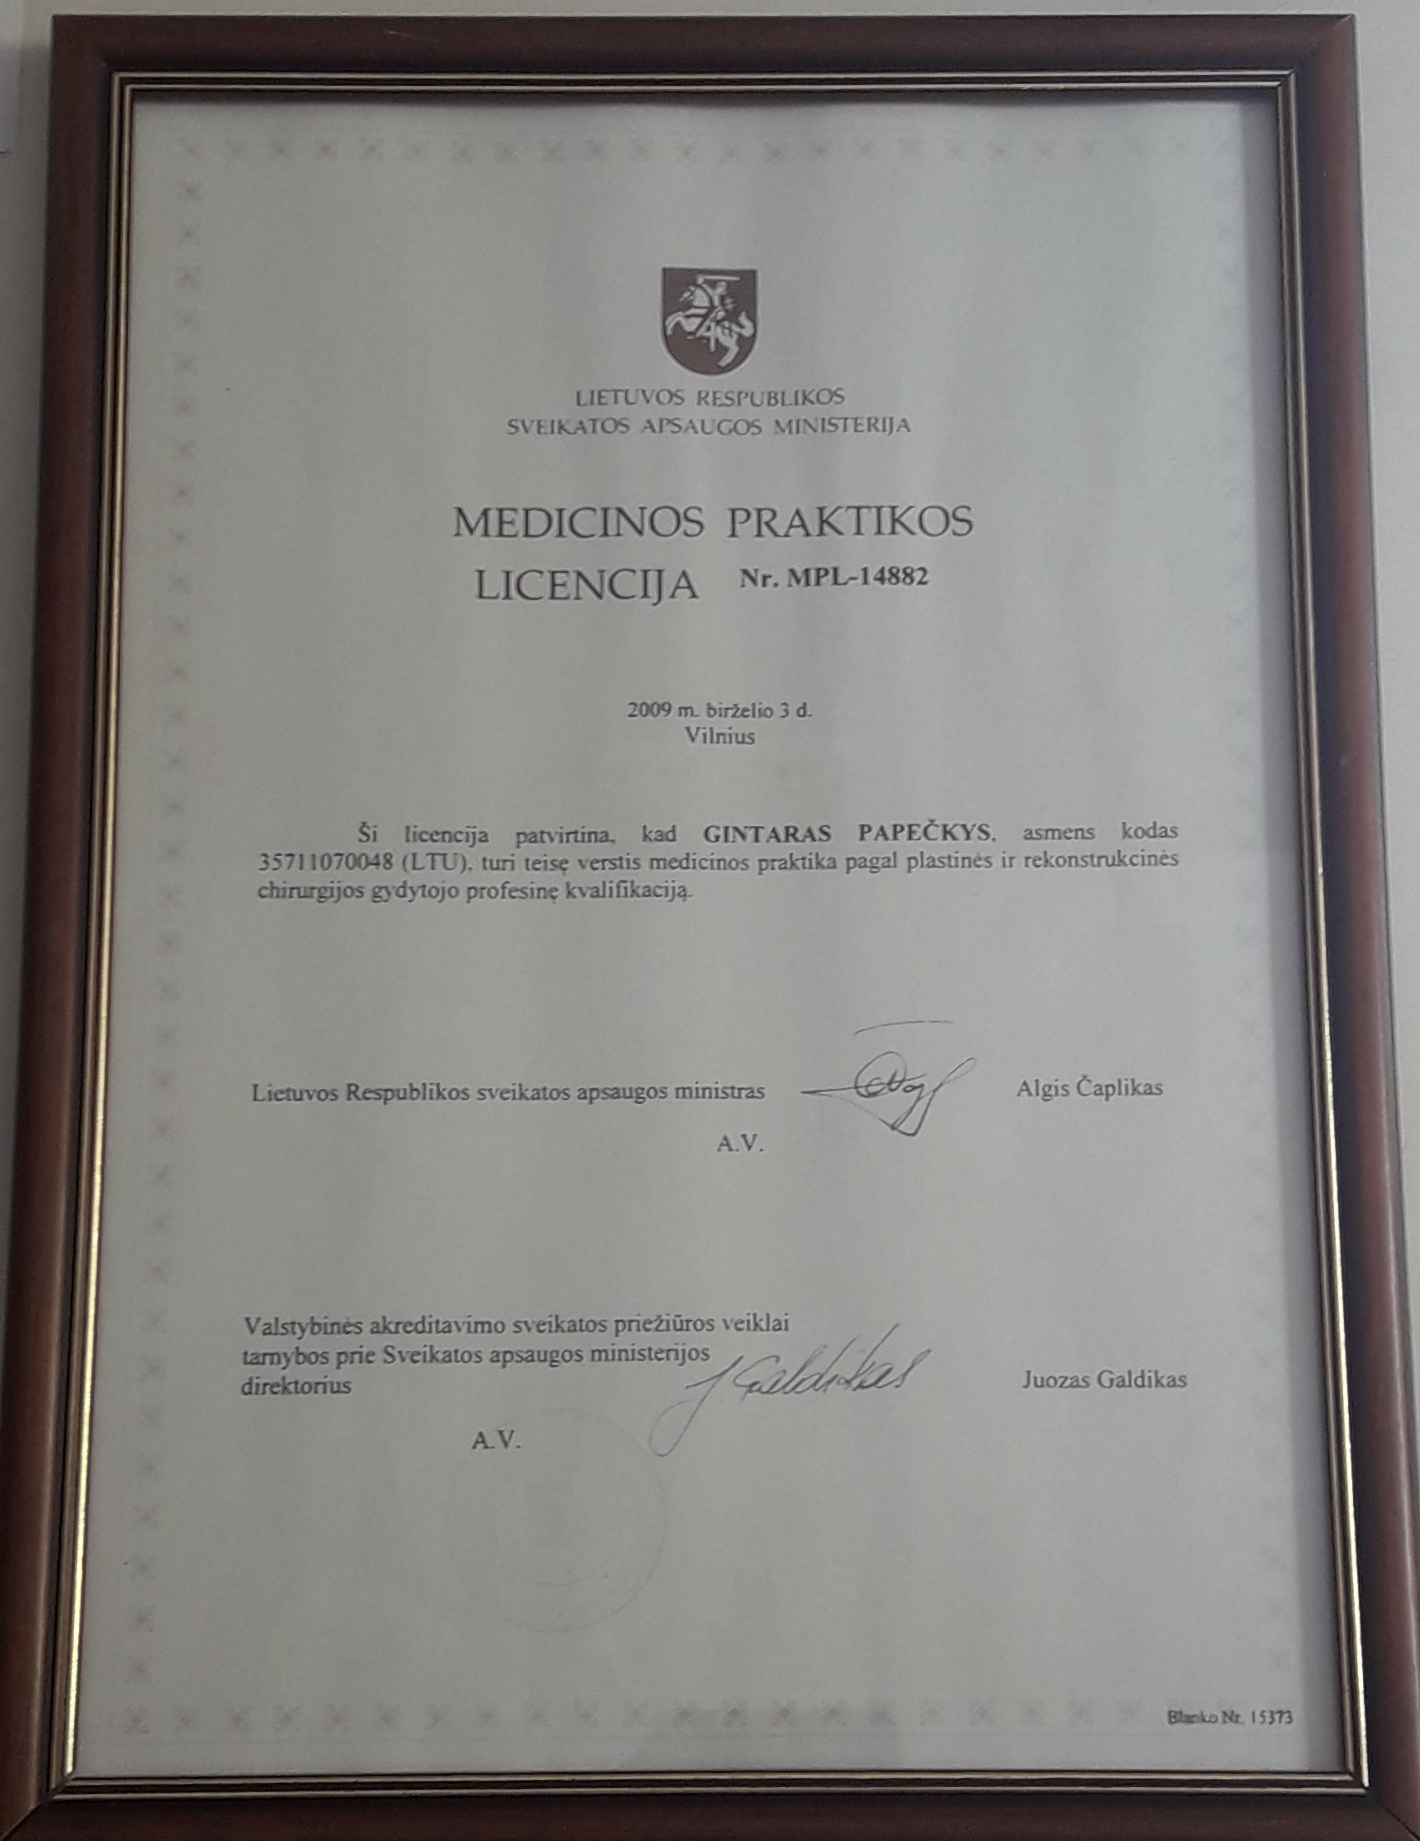 Gintaras Papeckys sertificate